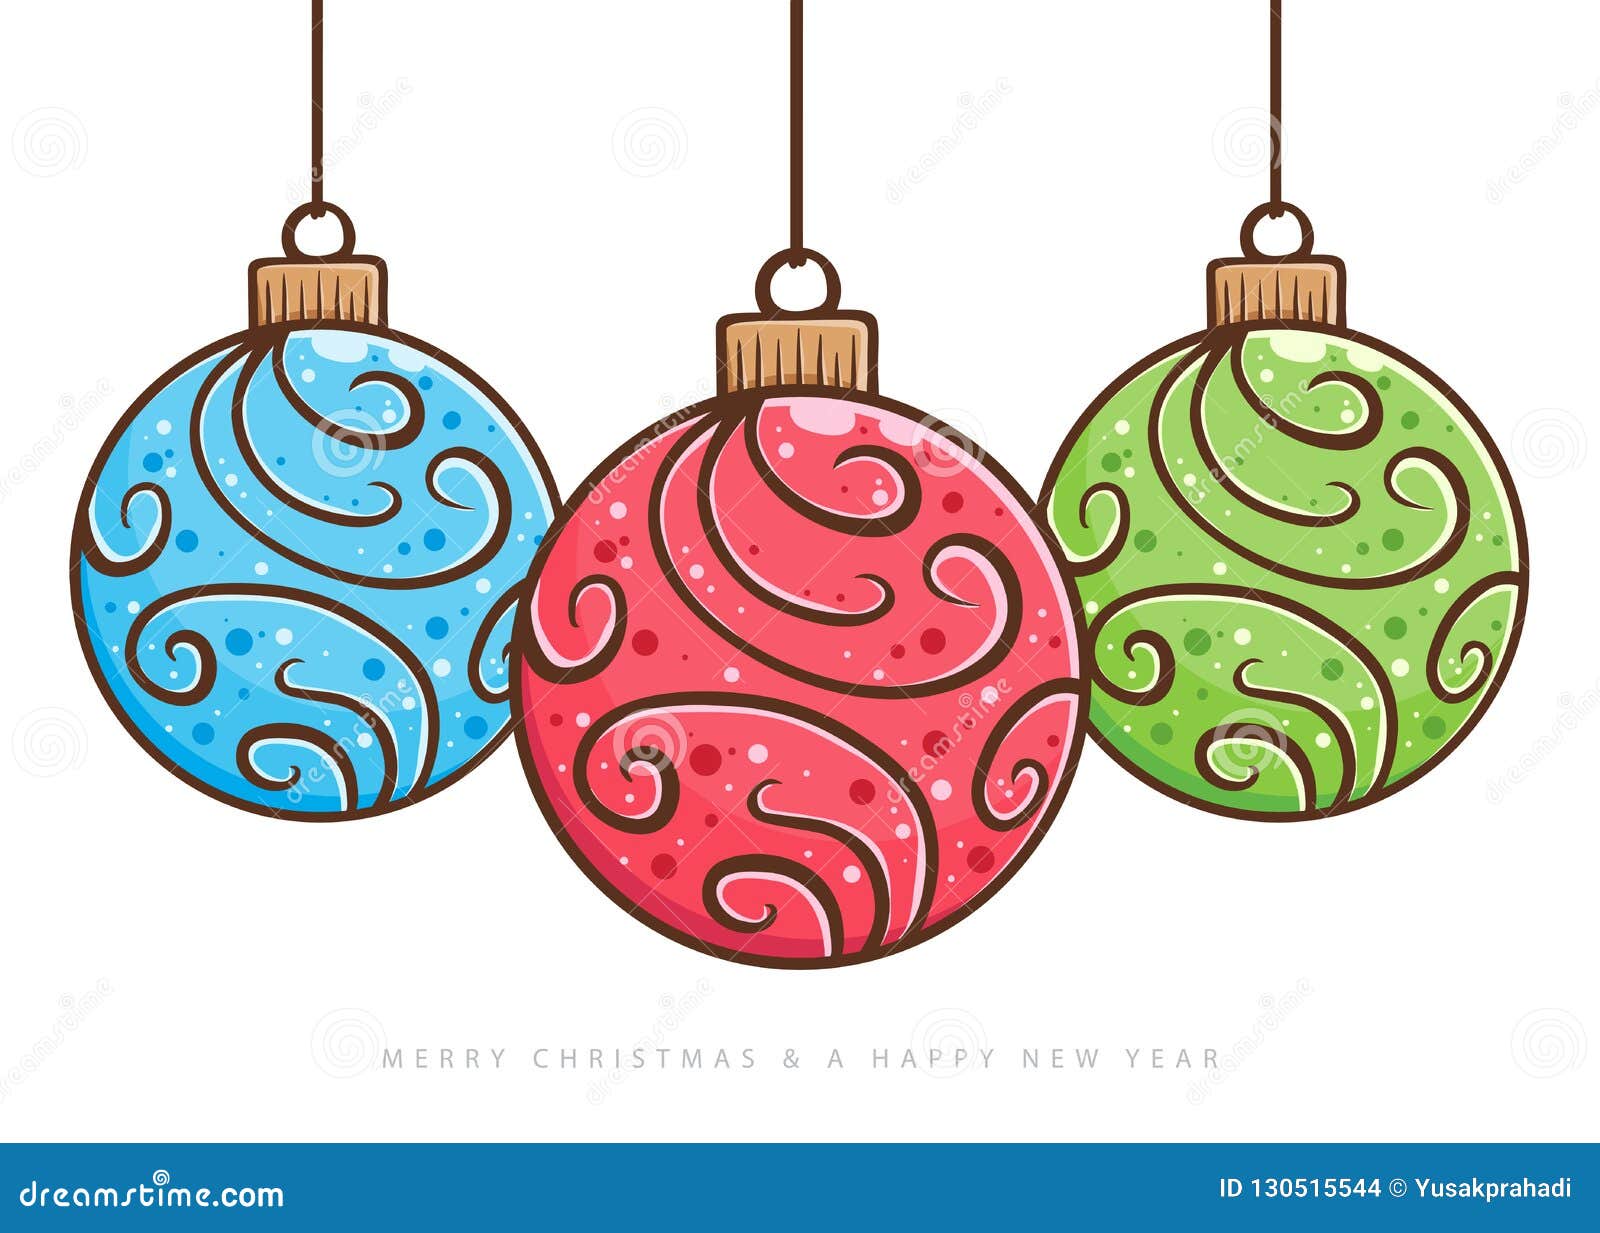 Disegni Palle Di Natale.Disegno Della Mano Dell Ornamento Della Palla Di Natale Illustrazione Vettoriale Illustrazione Di Cerchio Mano 130515544